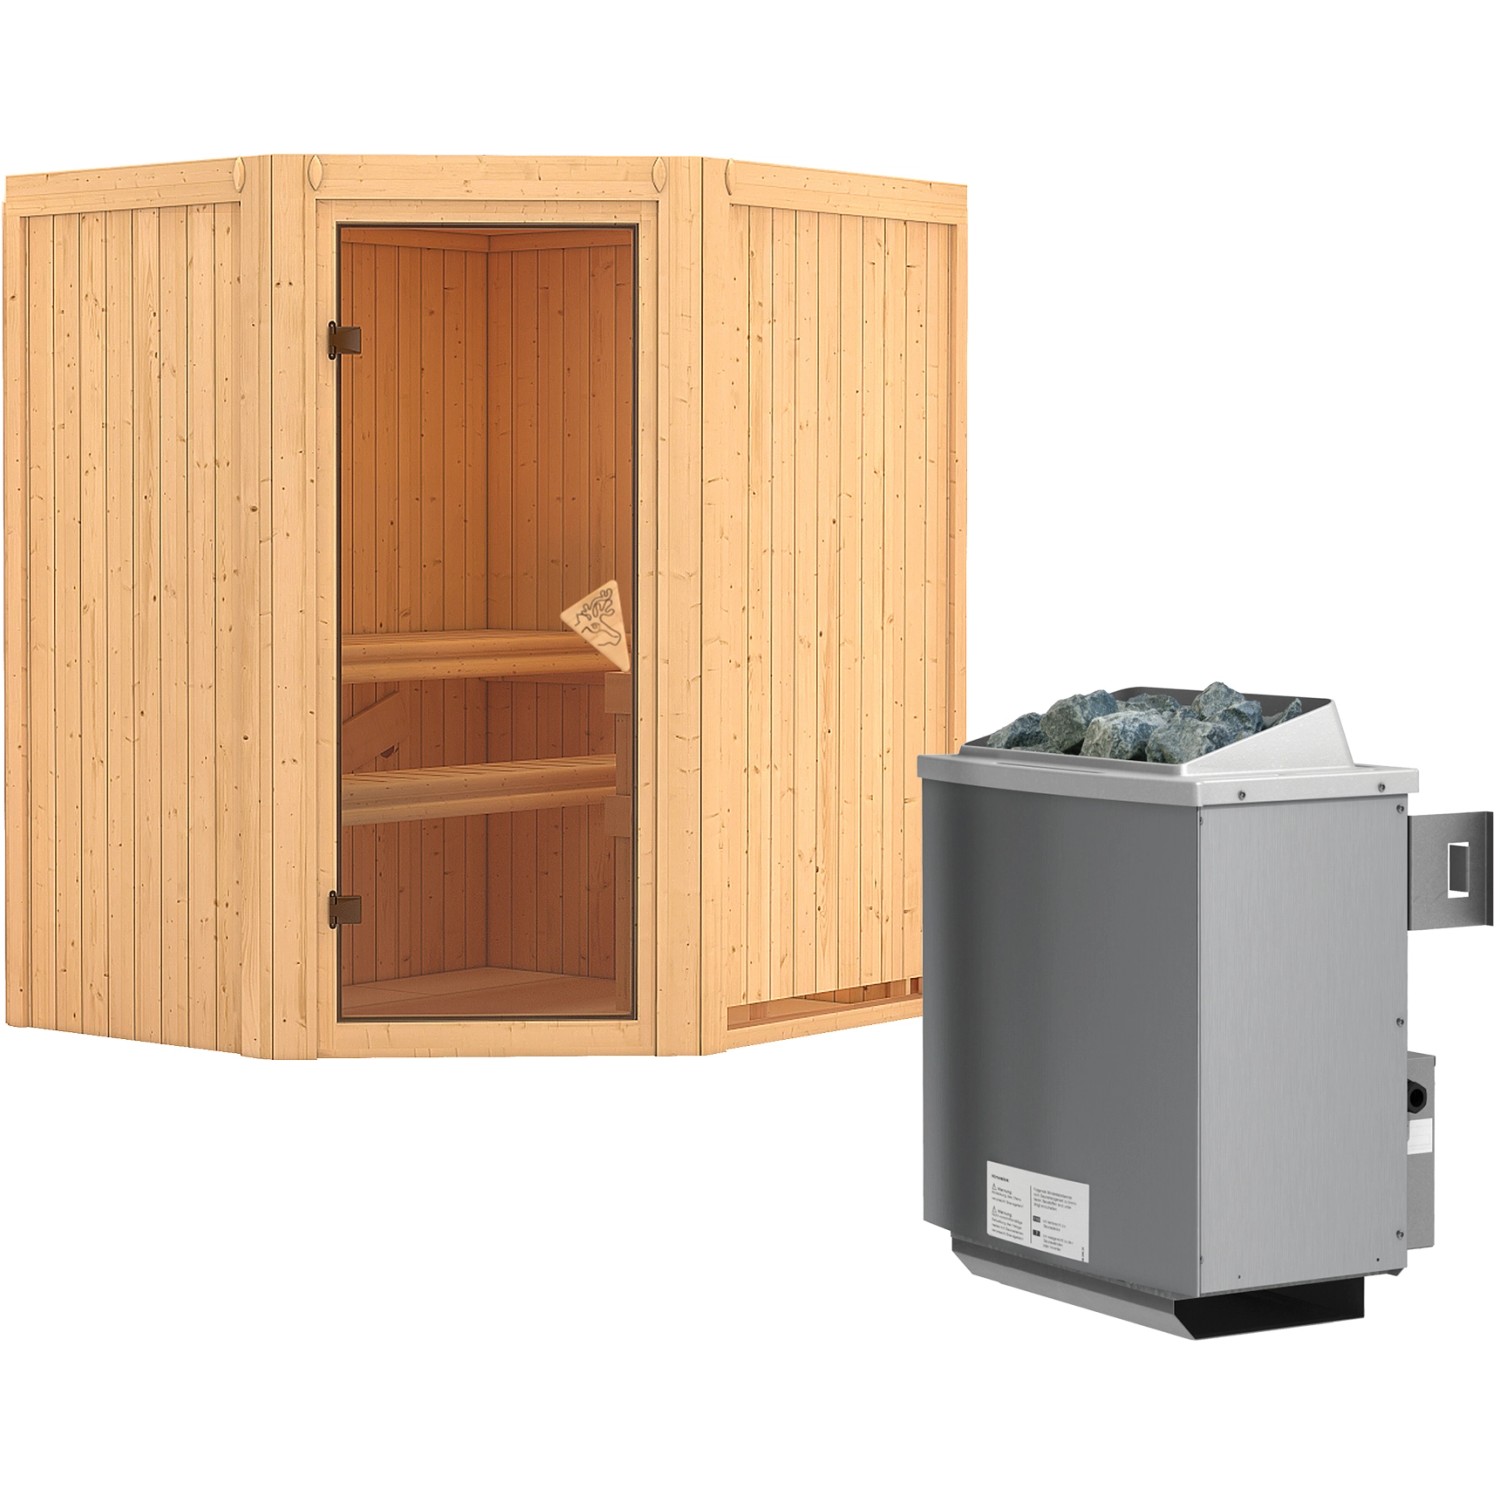 Karibu Sauna-Set Tjorven inkl. Ofen 9 kW mit integr. Steuerung günstig online kaufen